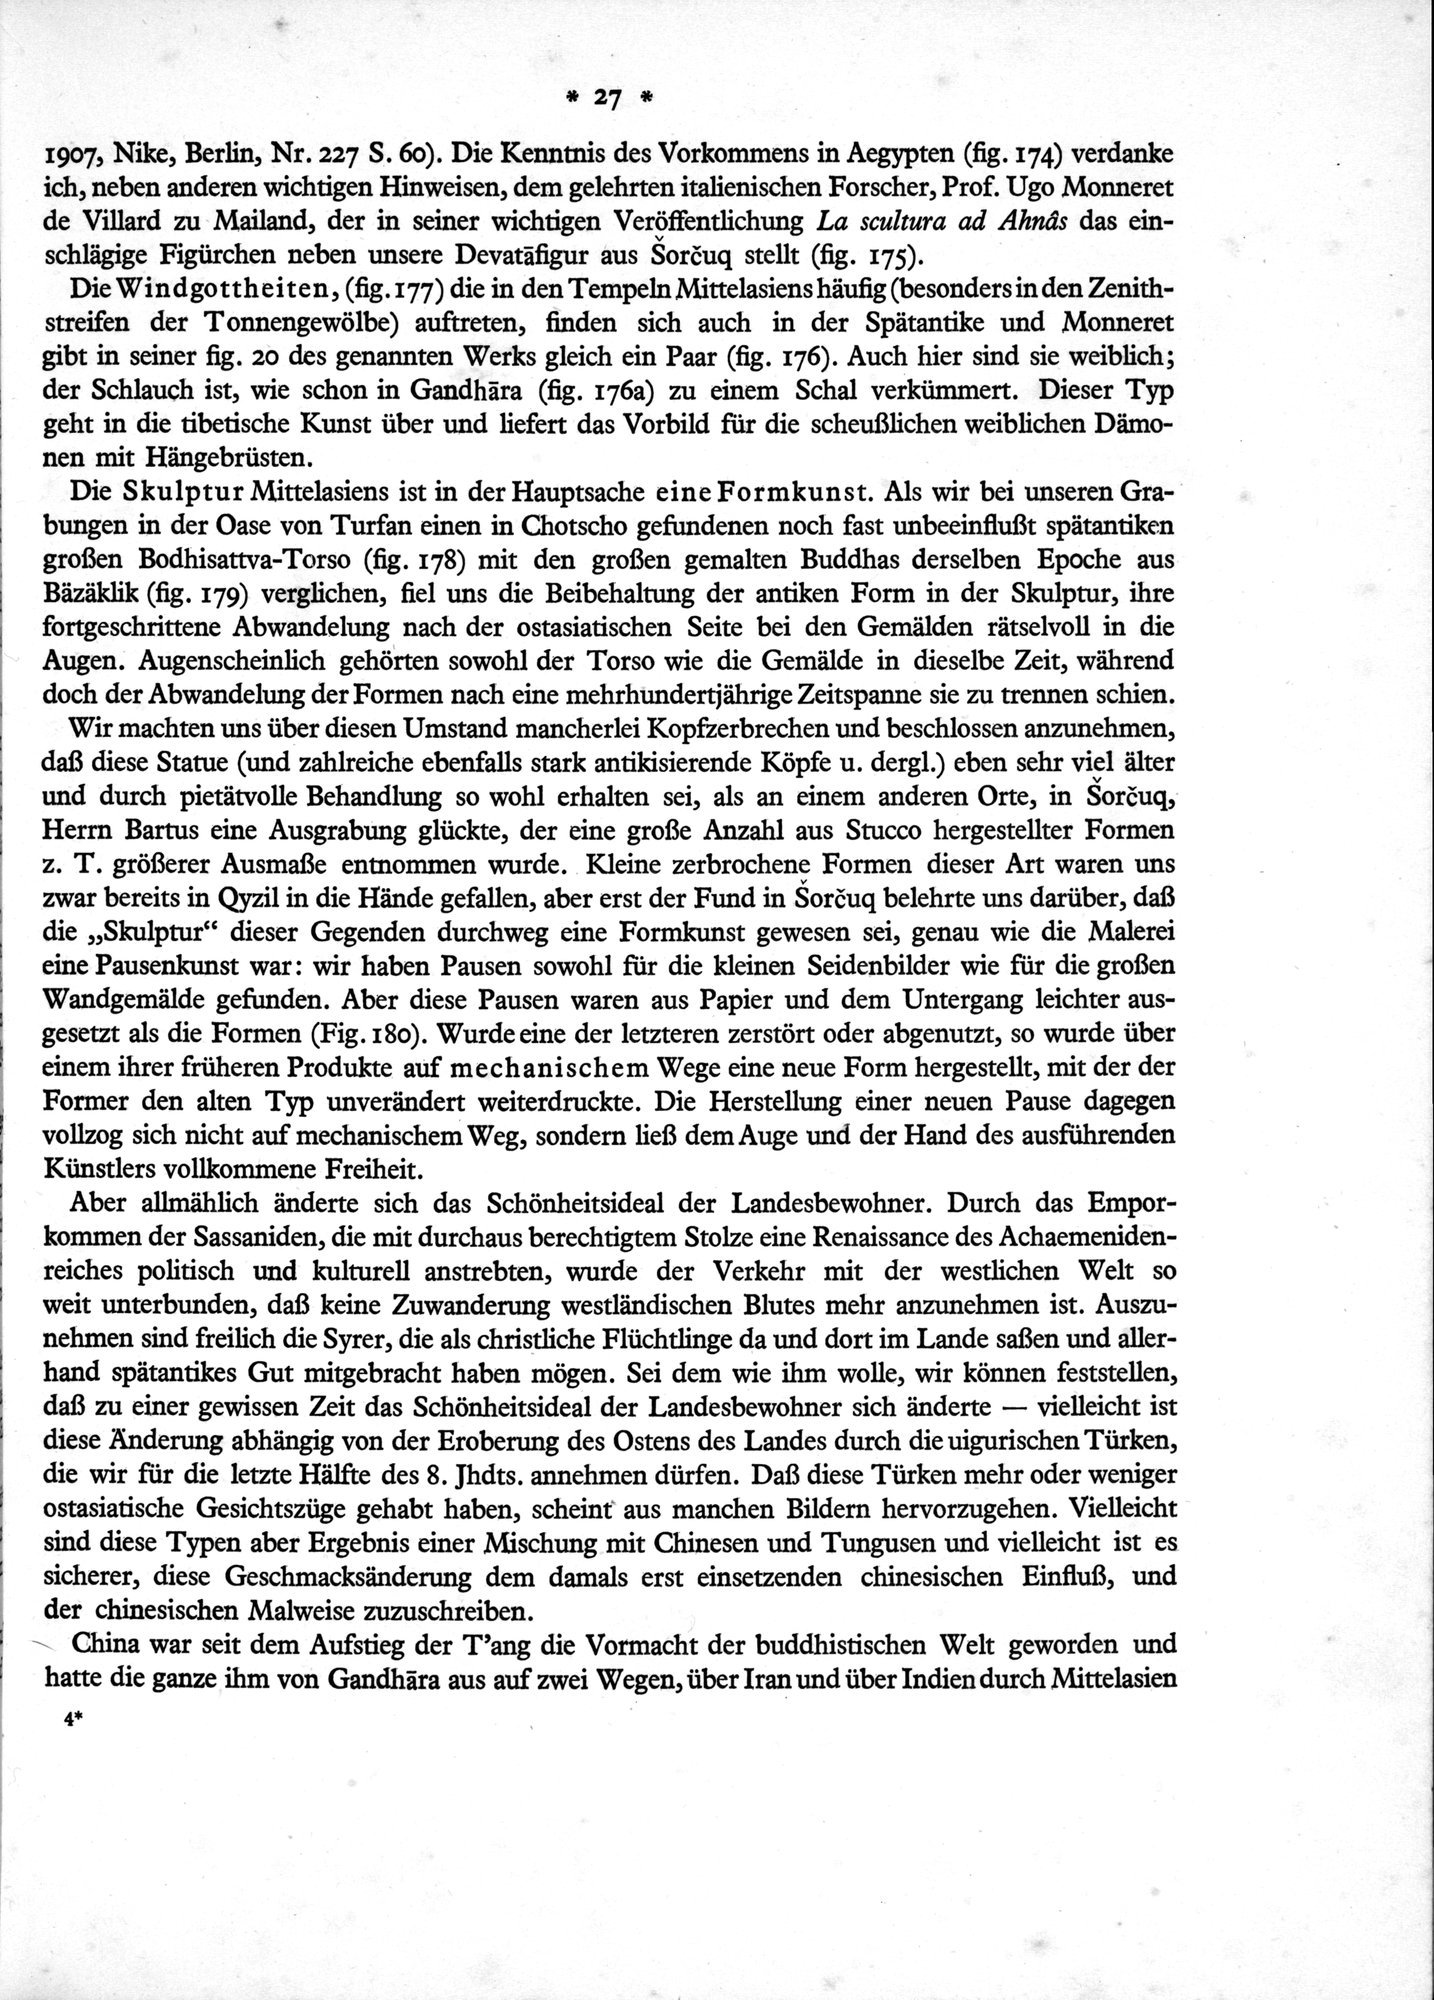 Bilderatlas zur Kunst und Kulturgeschichte Mittel-Asiens : vol.1 / Page 31 (Grayscale High Resolution Image)